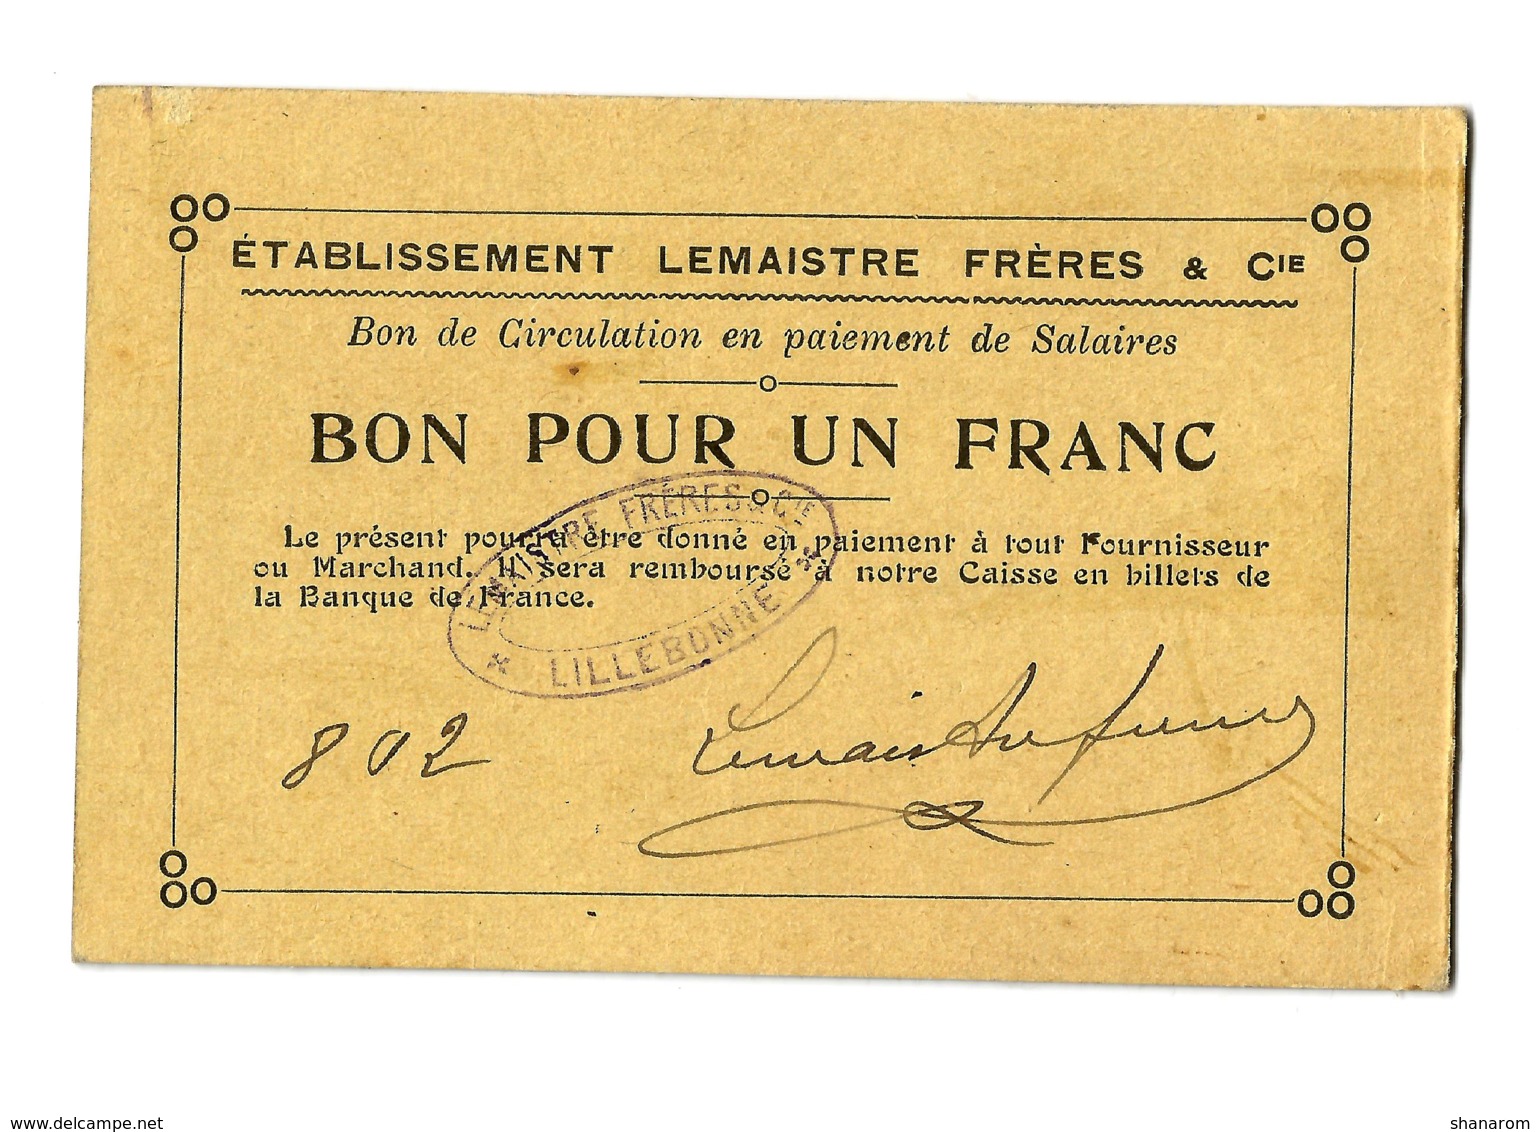 1914 - 1918 // LILLEBONNE (Seine-Maritime) // Etb LEMAISTRE FRERES & Cie // Bon Pour Un Franc - Bons & Nécessité